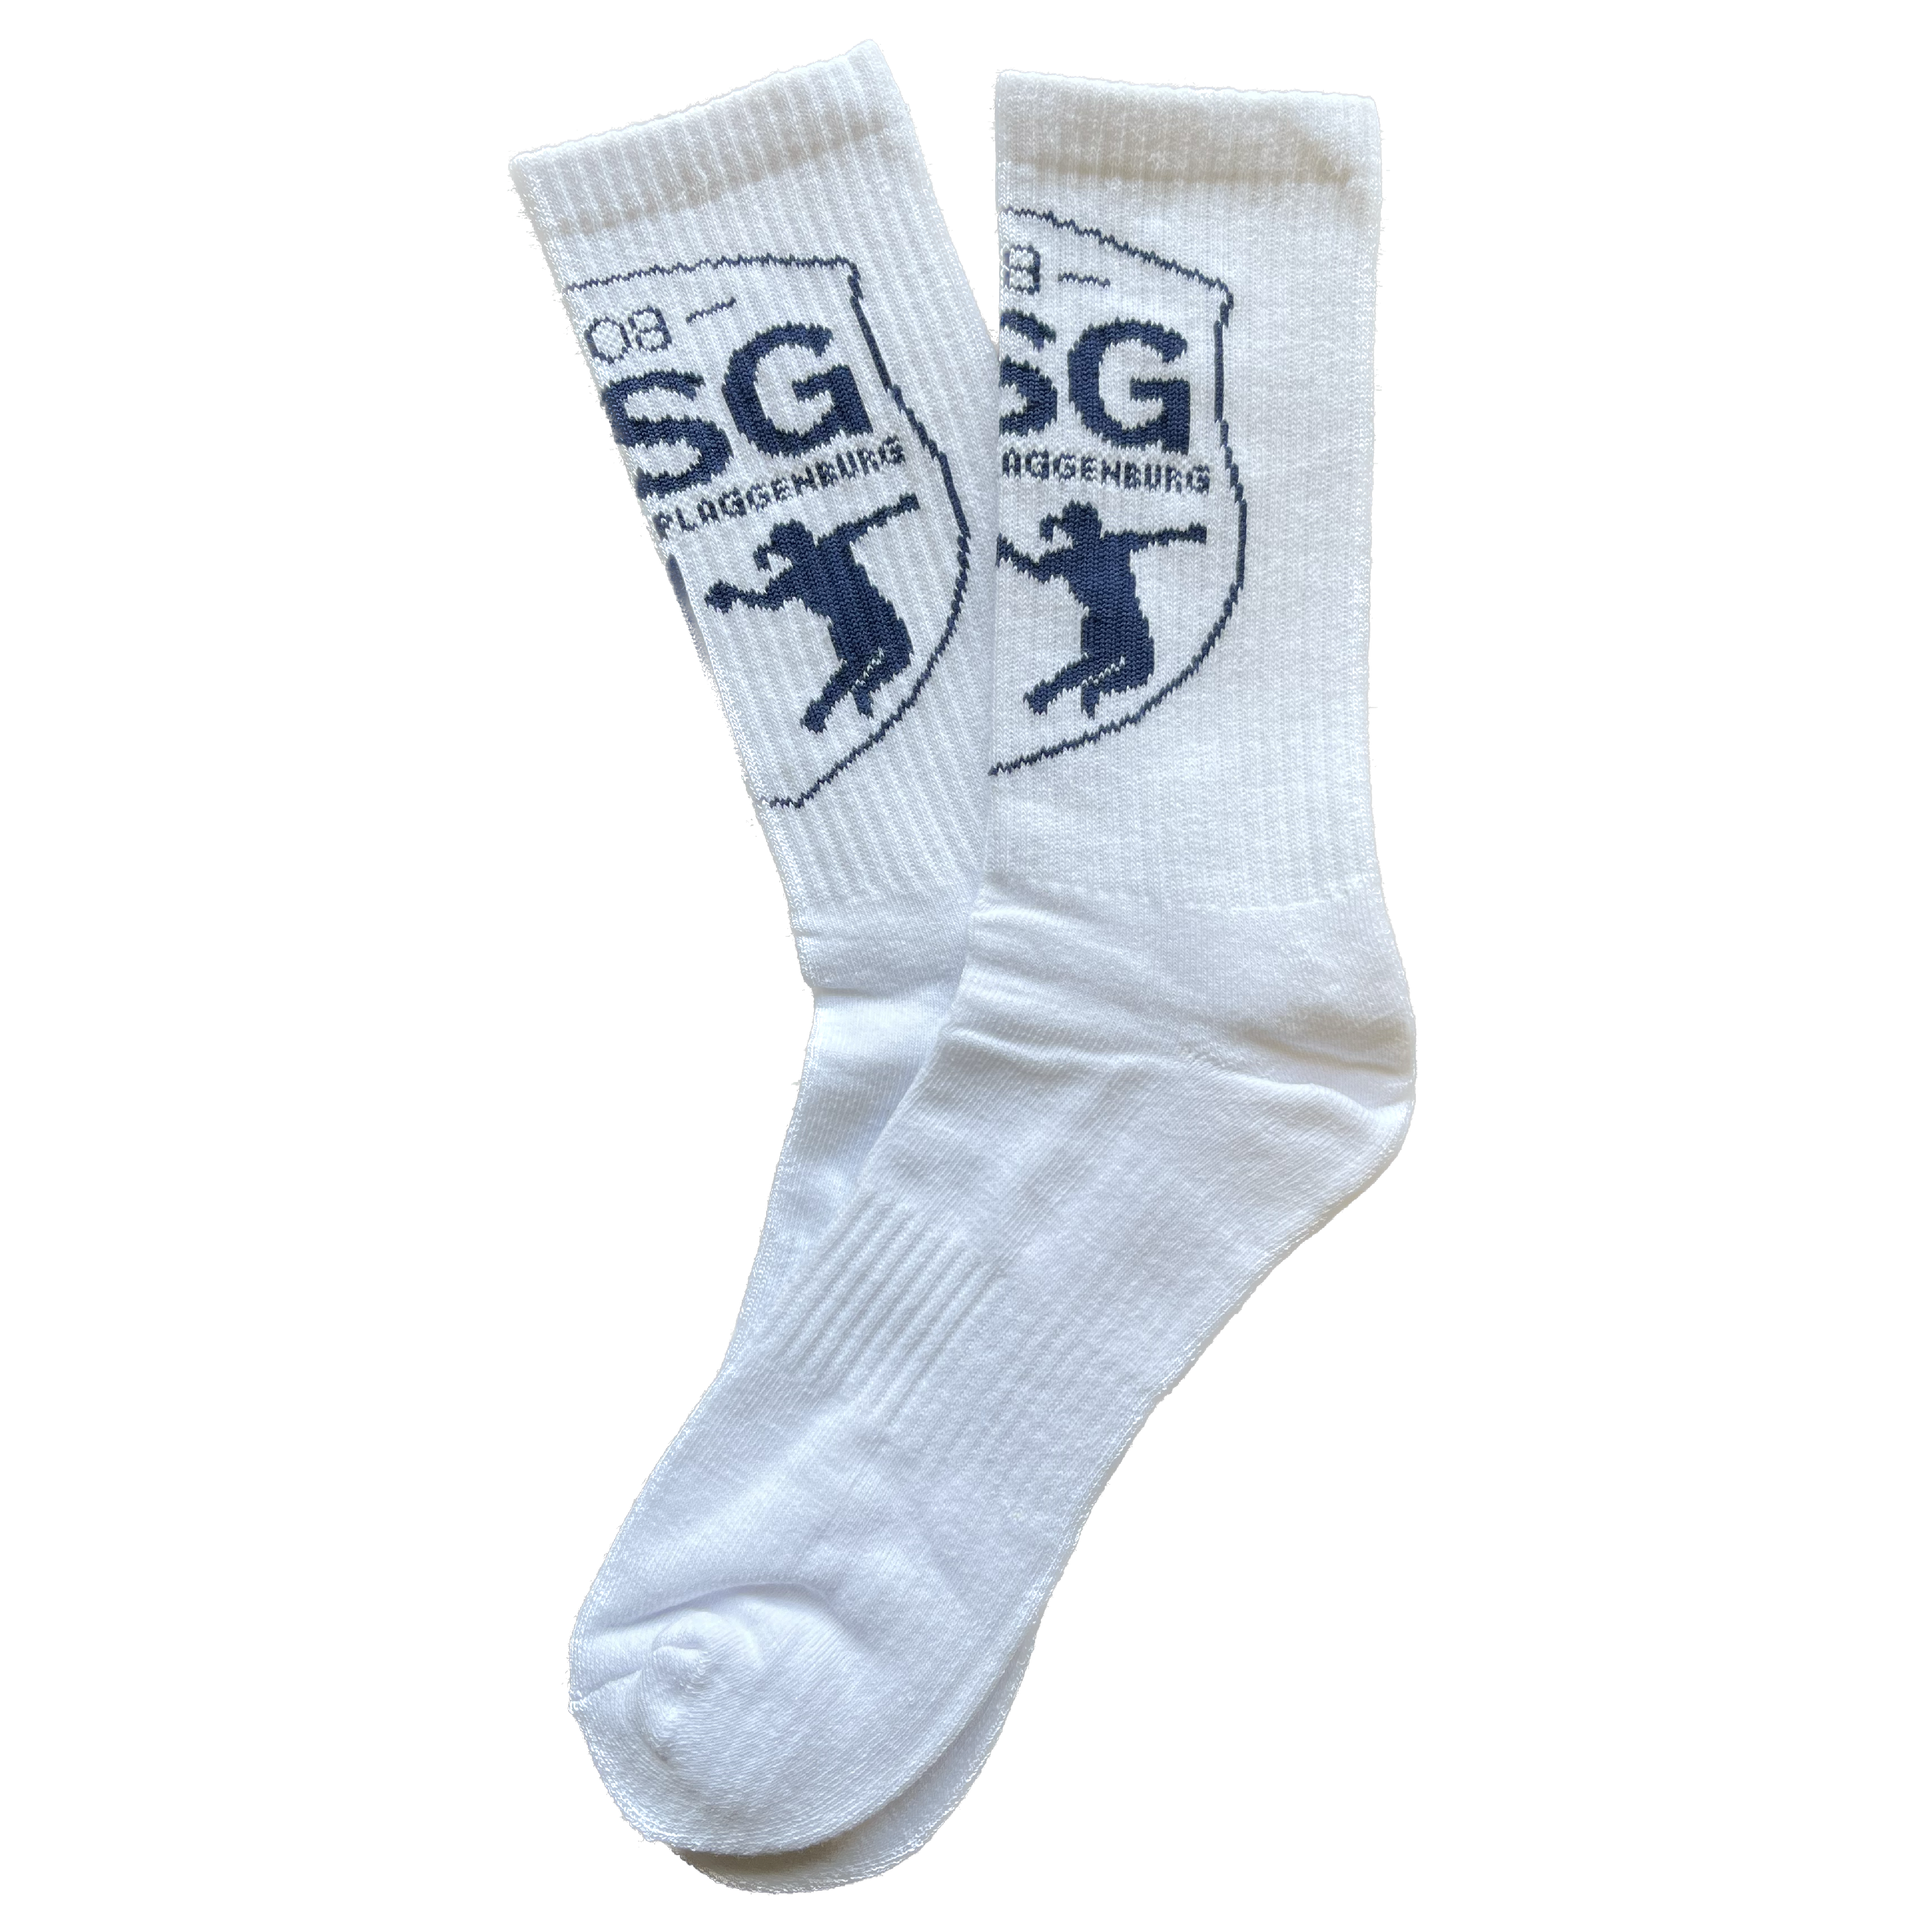 HSG Middels / Plaggenburg Socken